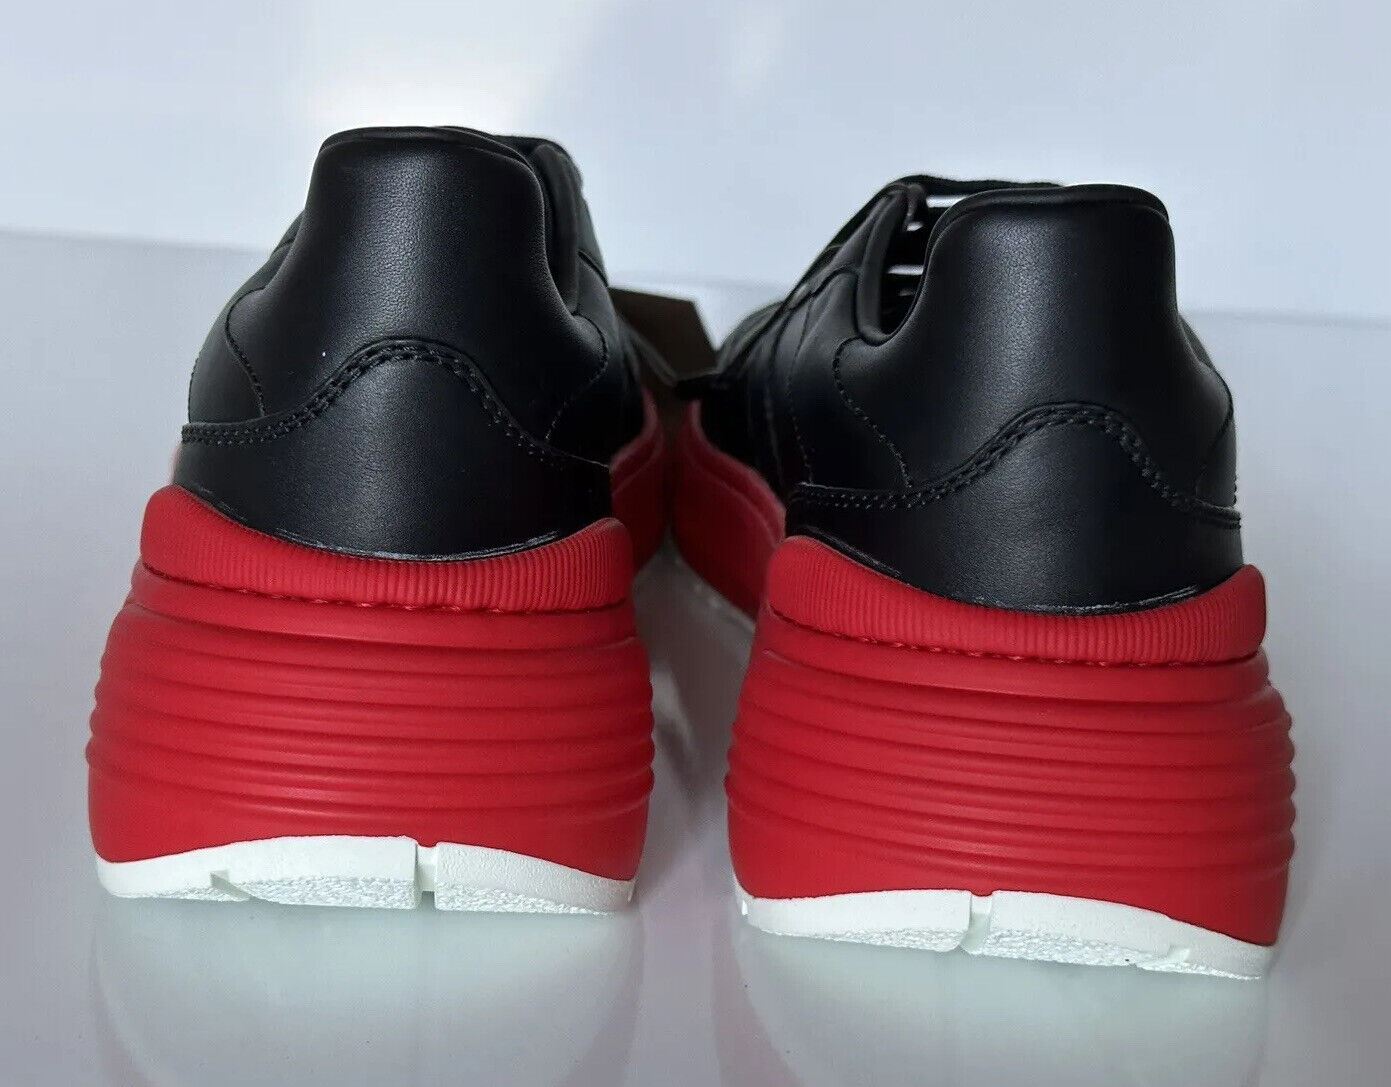 Мужские черные/красные кожаные кроссовки Bottega Veneta 850 долларов США 9 США (42 евро) 565646 